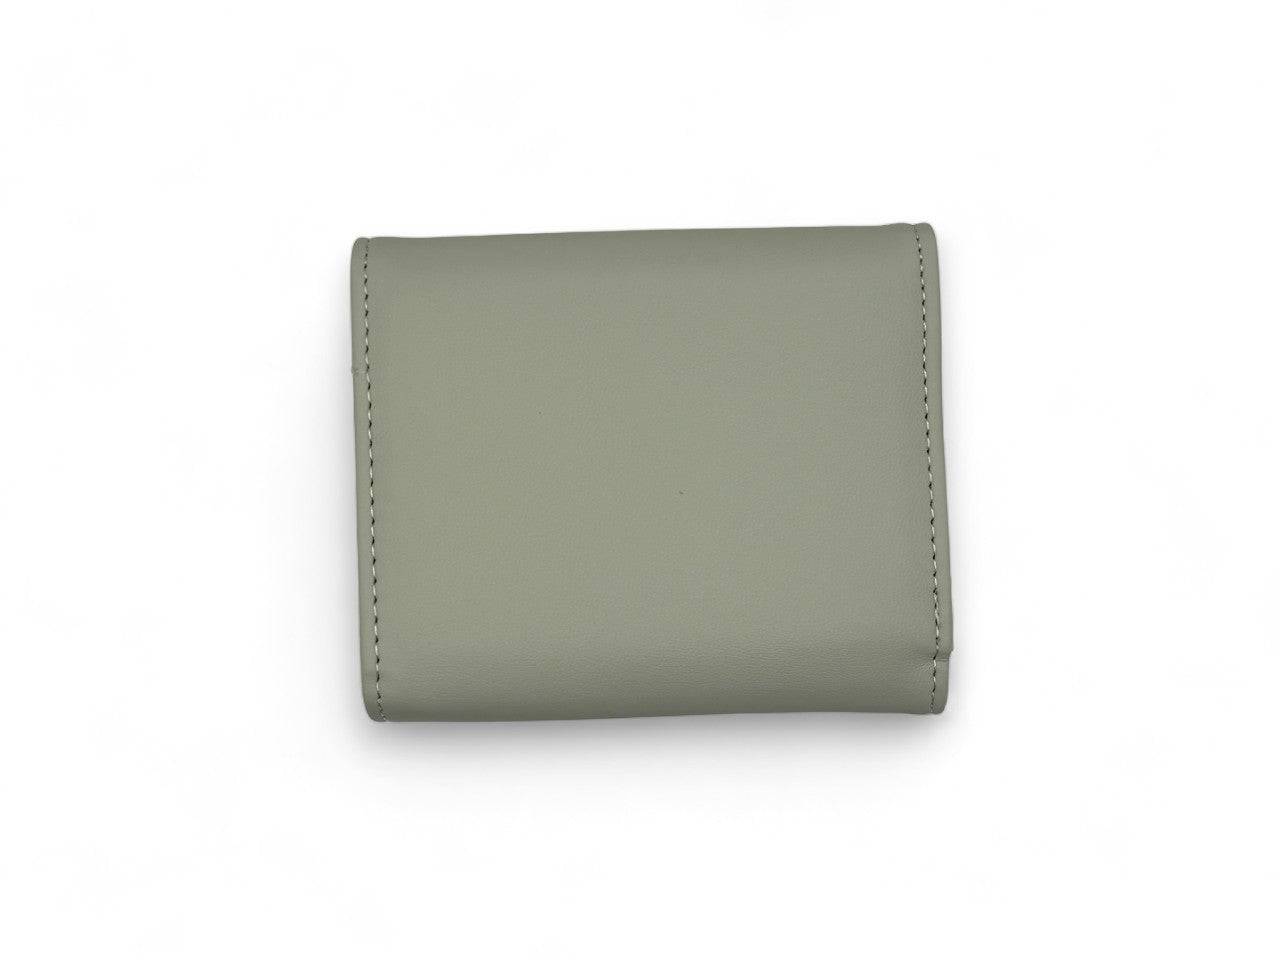 محفظة نسائية باللون الرمادى بتصميم بسيط وحجم مناسب - KSA